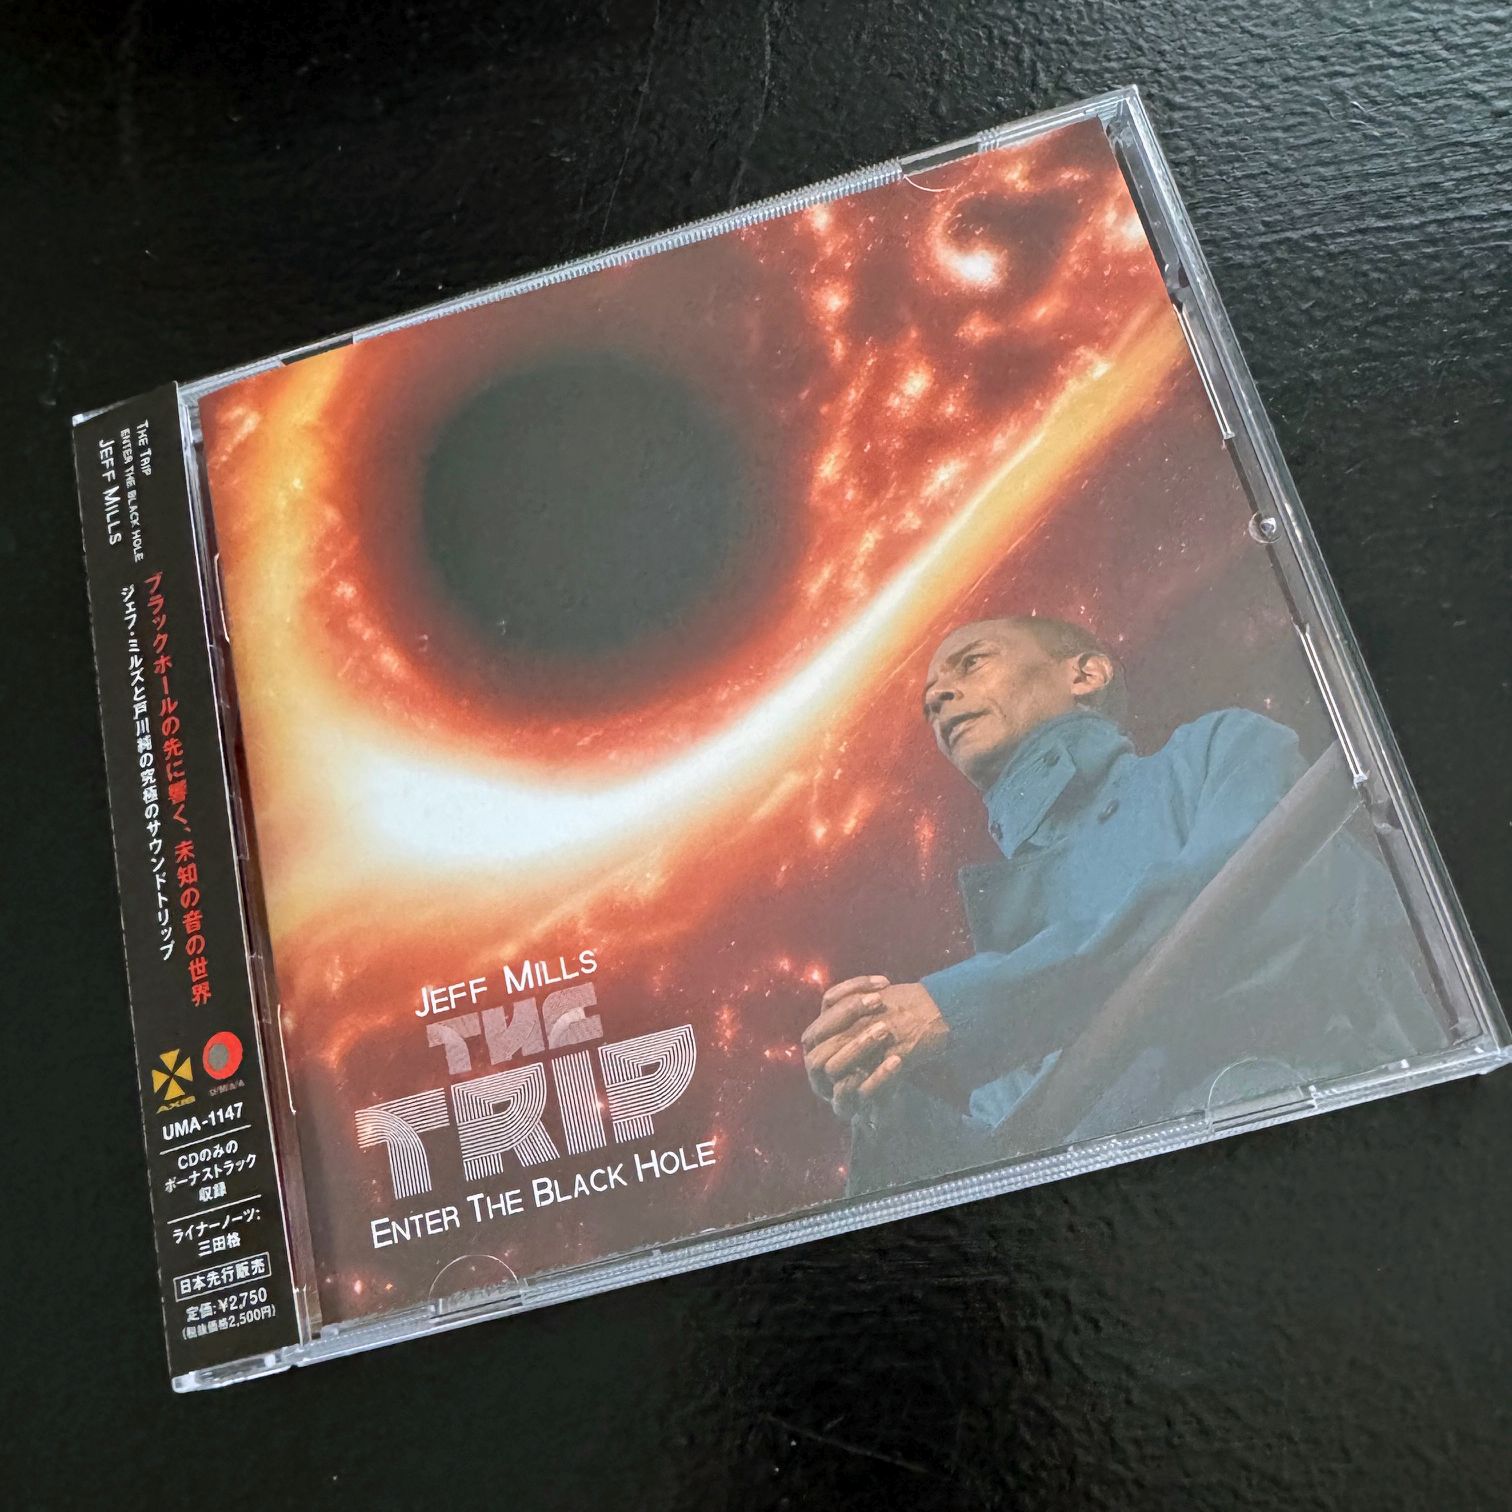 Mills, Jeff - The Trip (ltd CD)